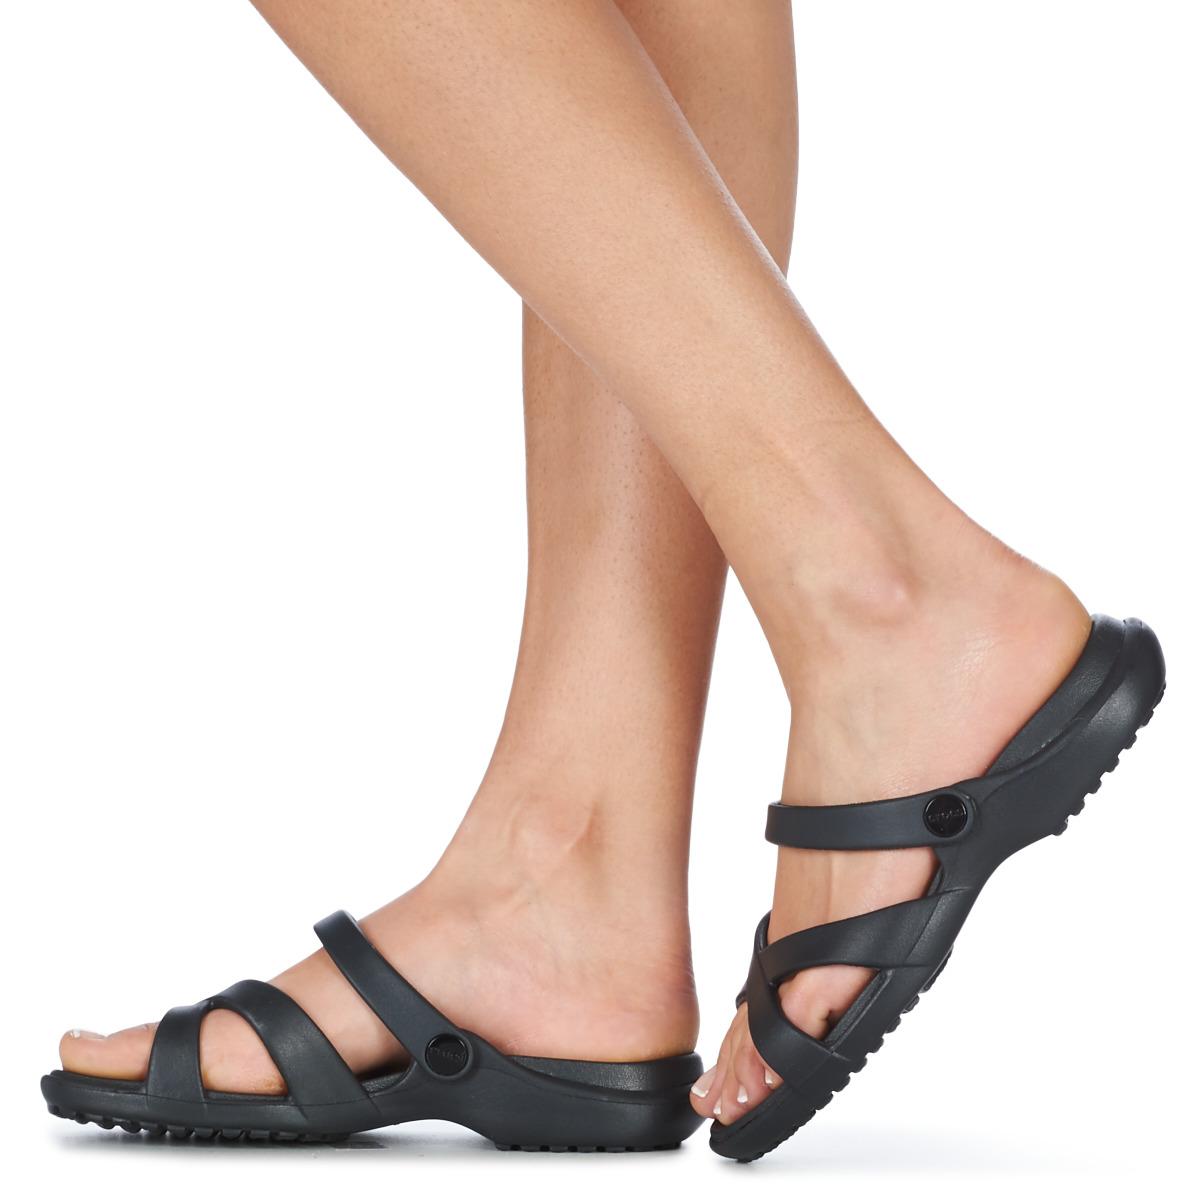 crocs crossband sandals